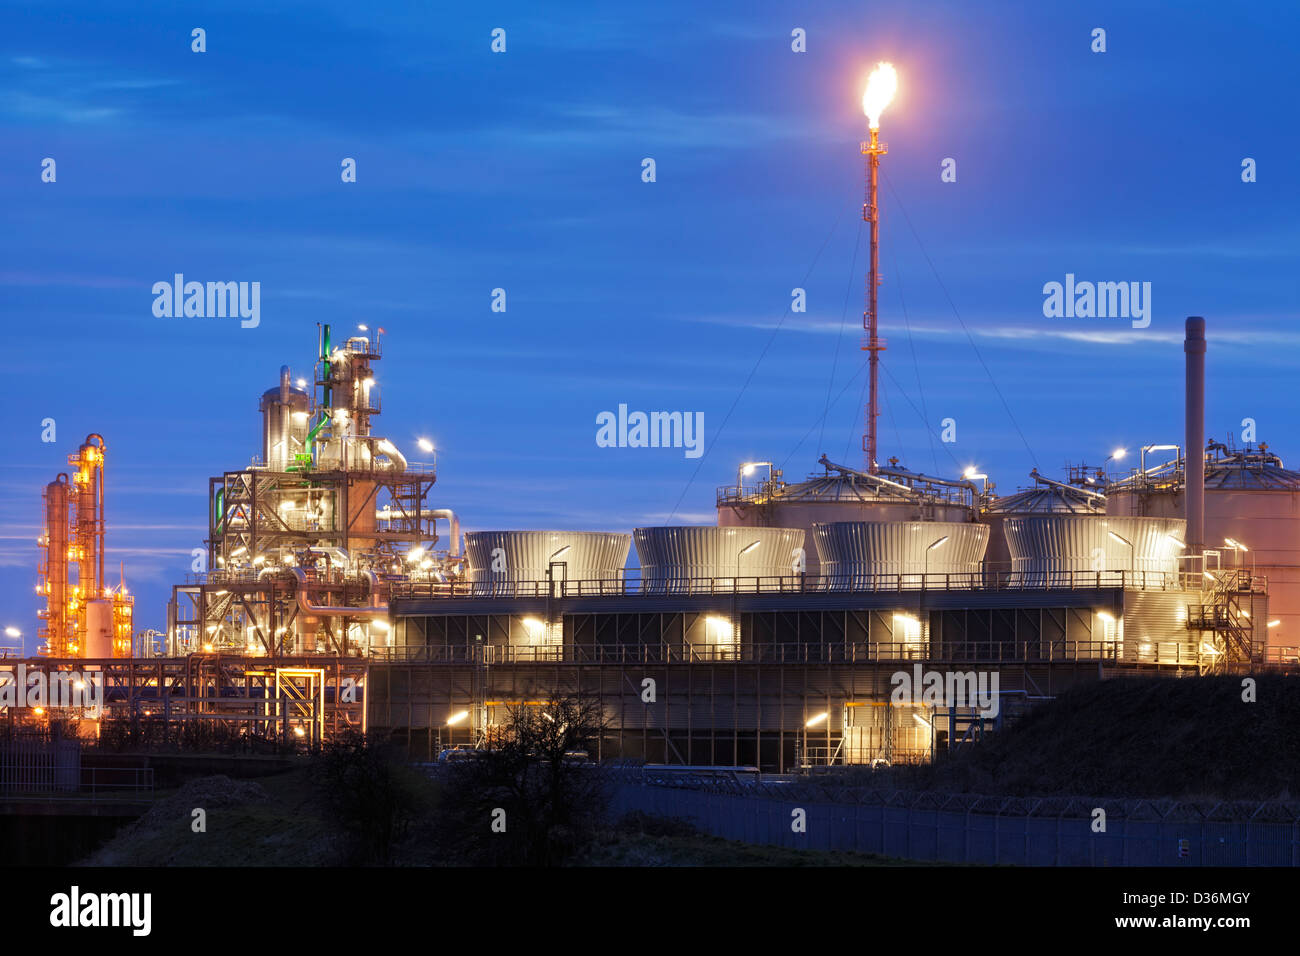 L'usine pétrochimique illuminée par l'éclairage artificiel après le crépuscule Banque D'Images